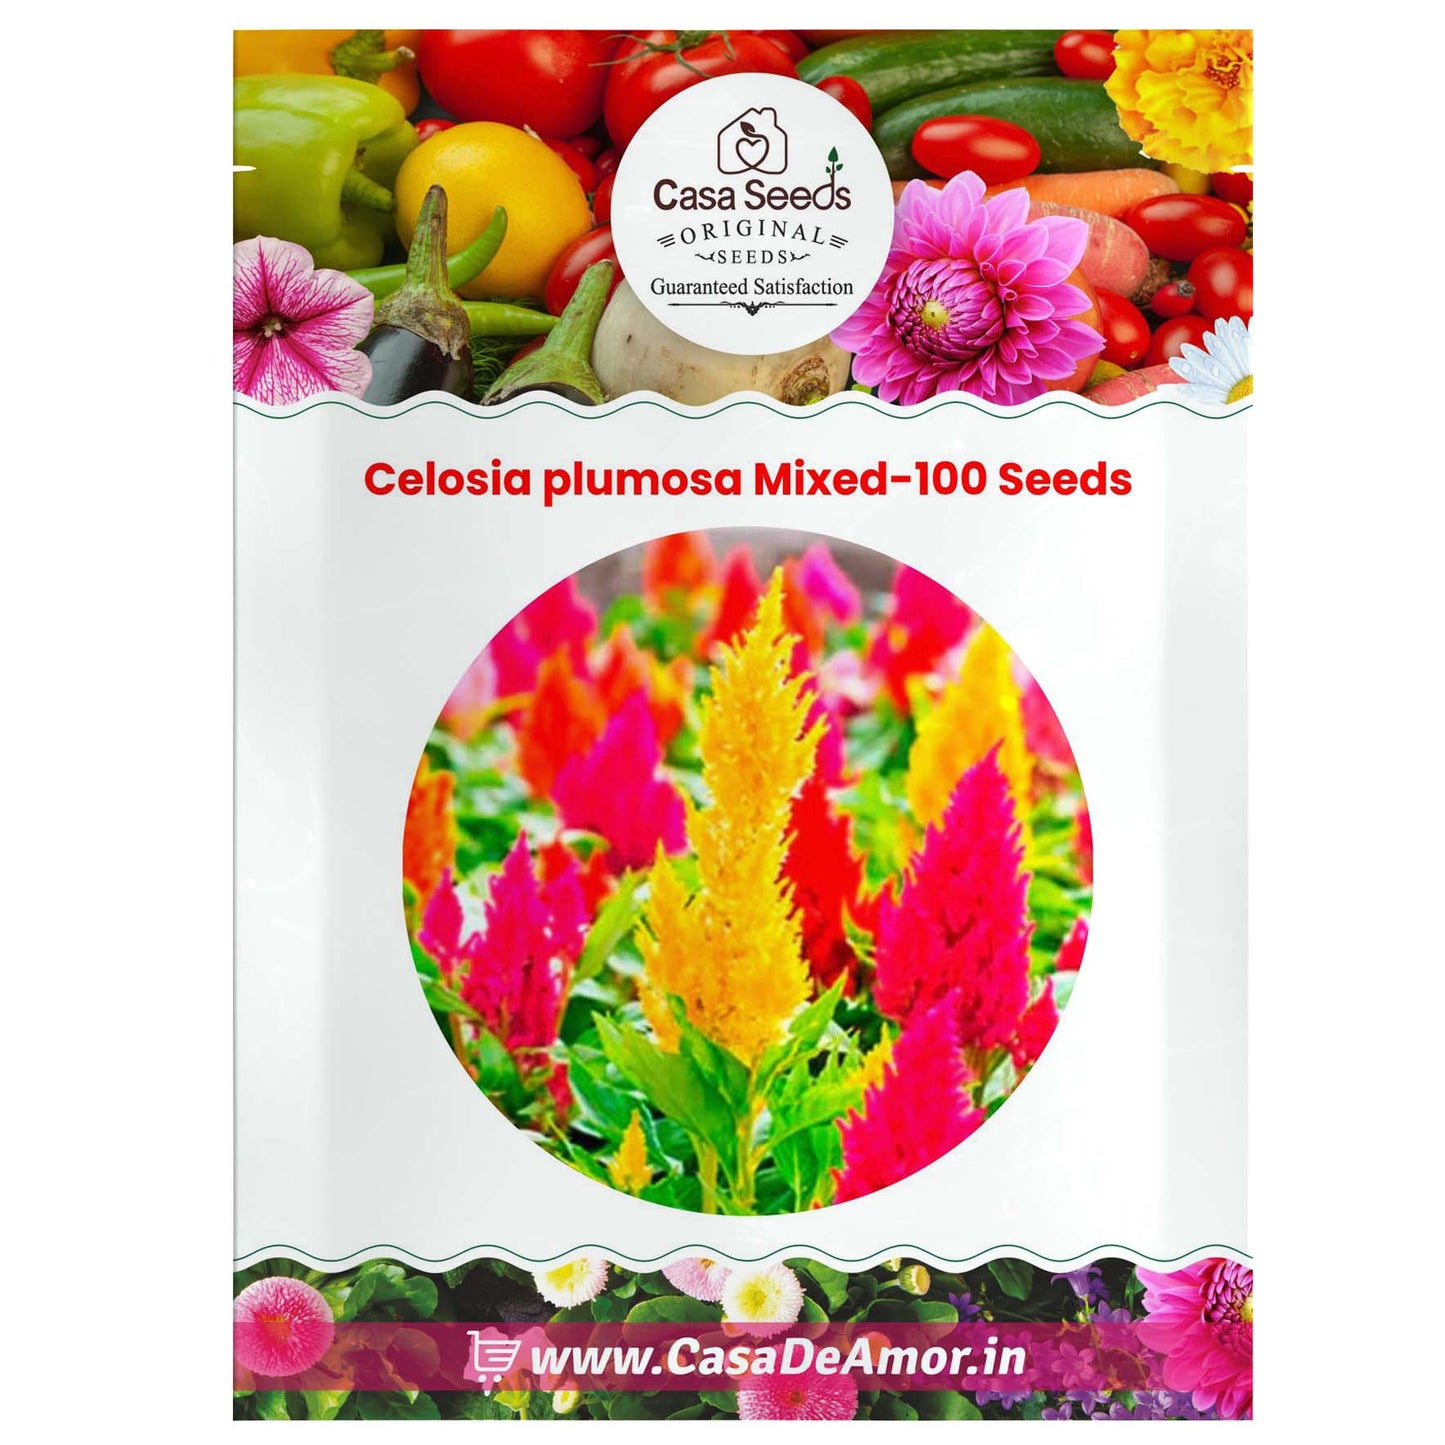 Celosia plumosa Mixed-100 Seeds